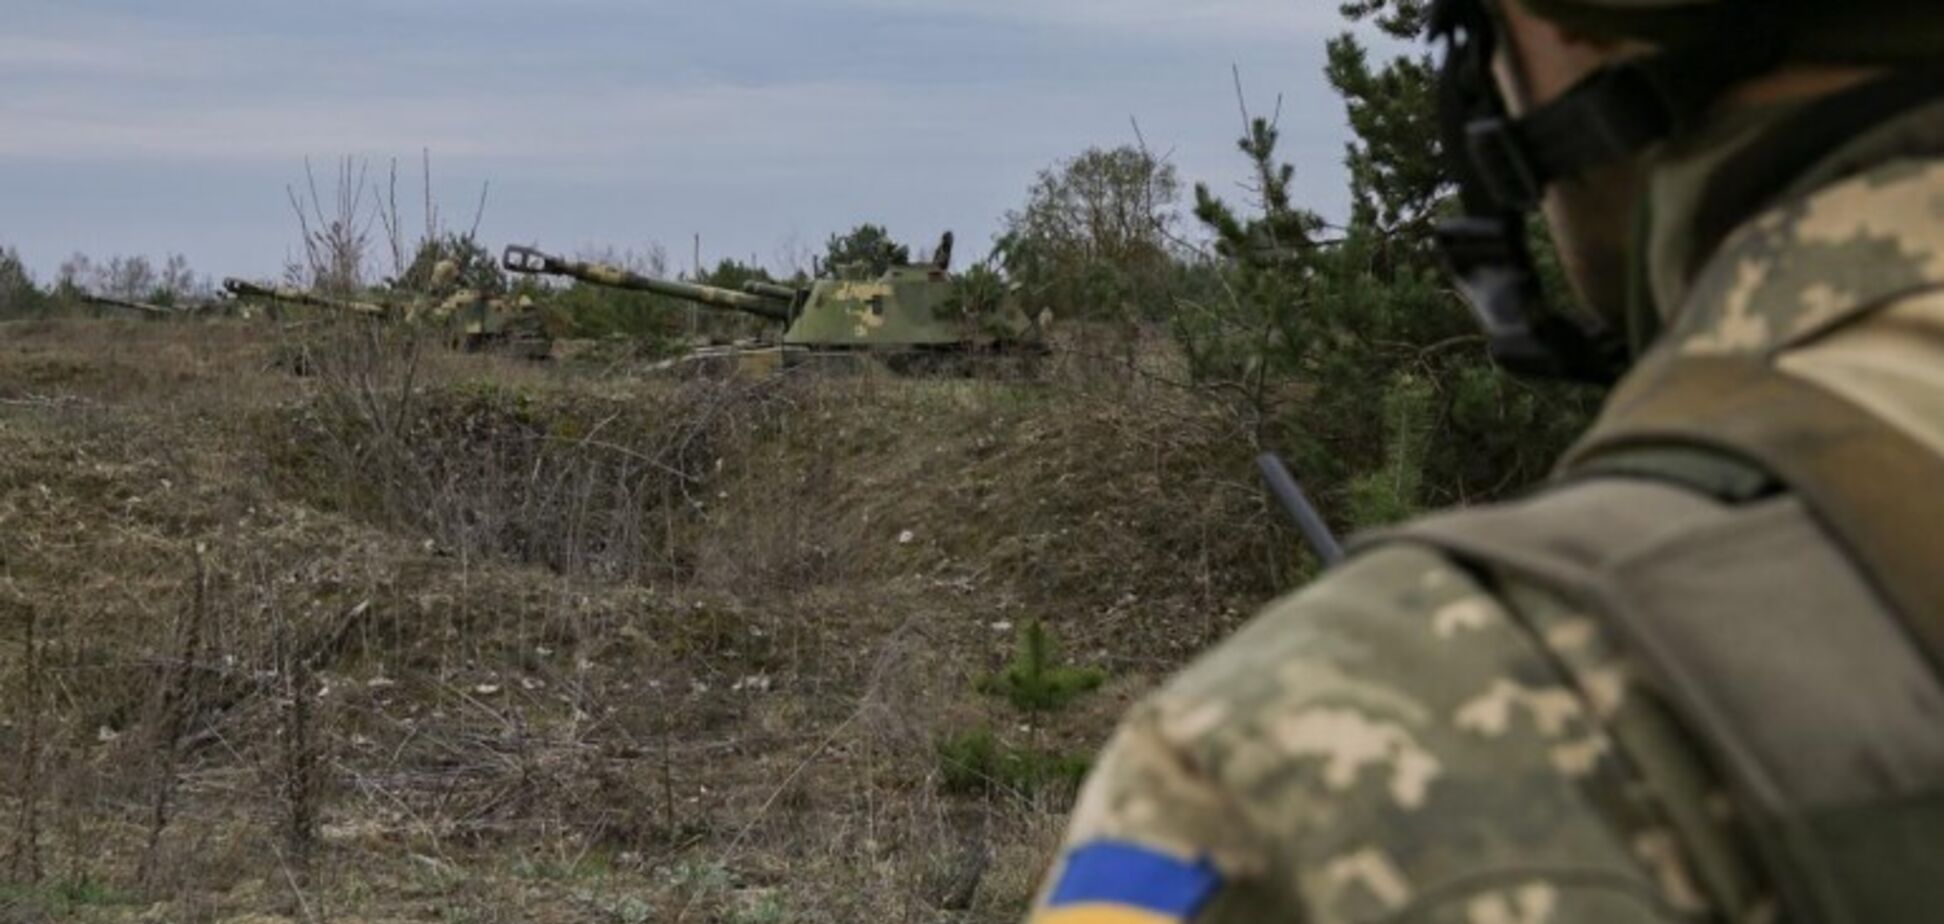 Розведення військ на Донбасі